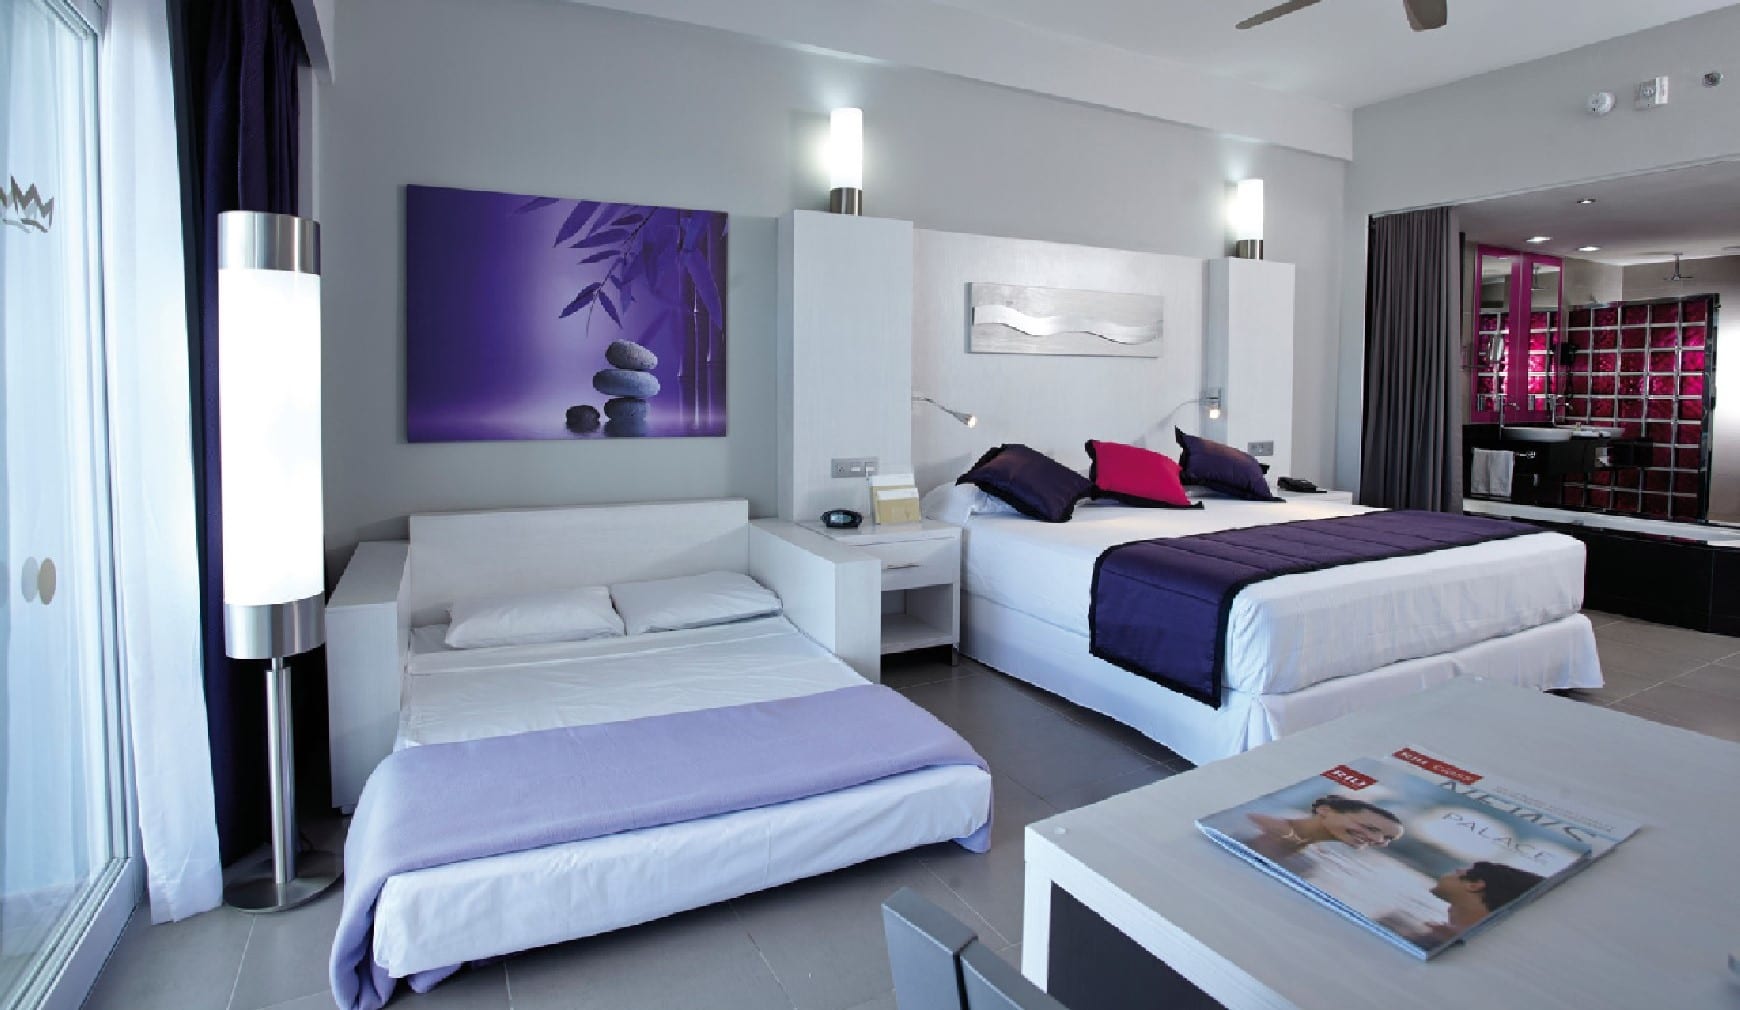 rui yucatan suites is sofa a sofa bed